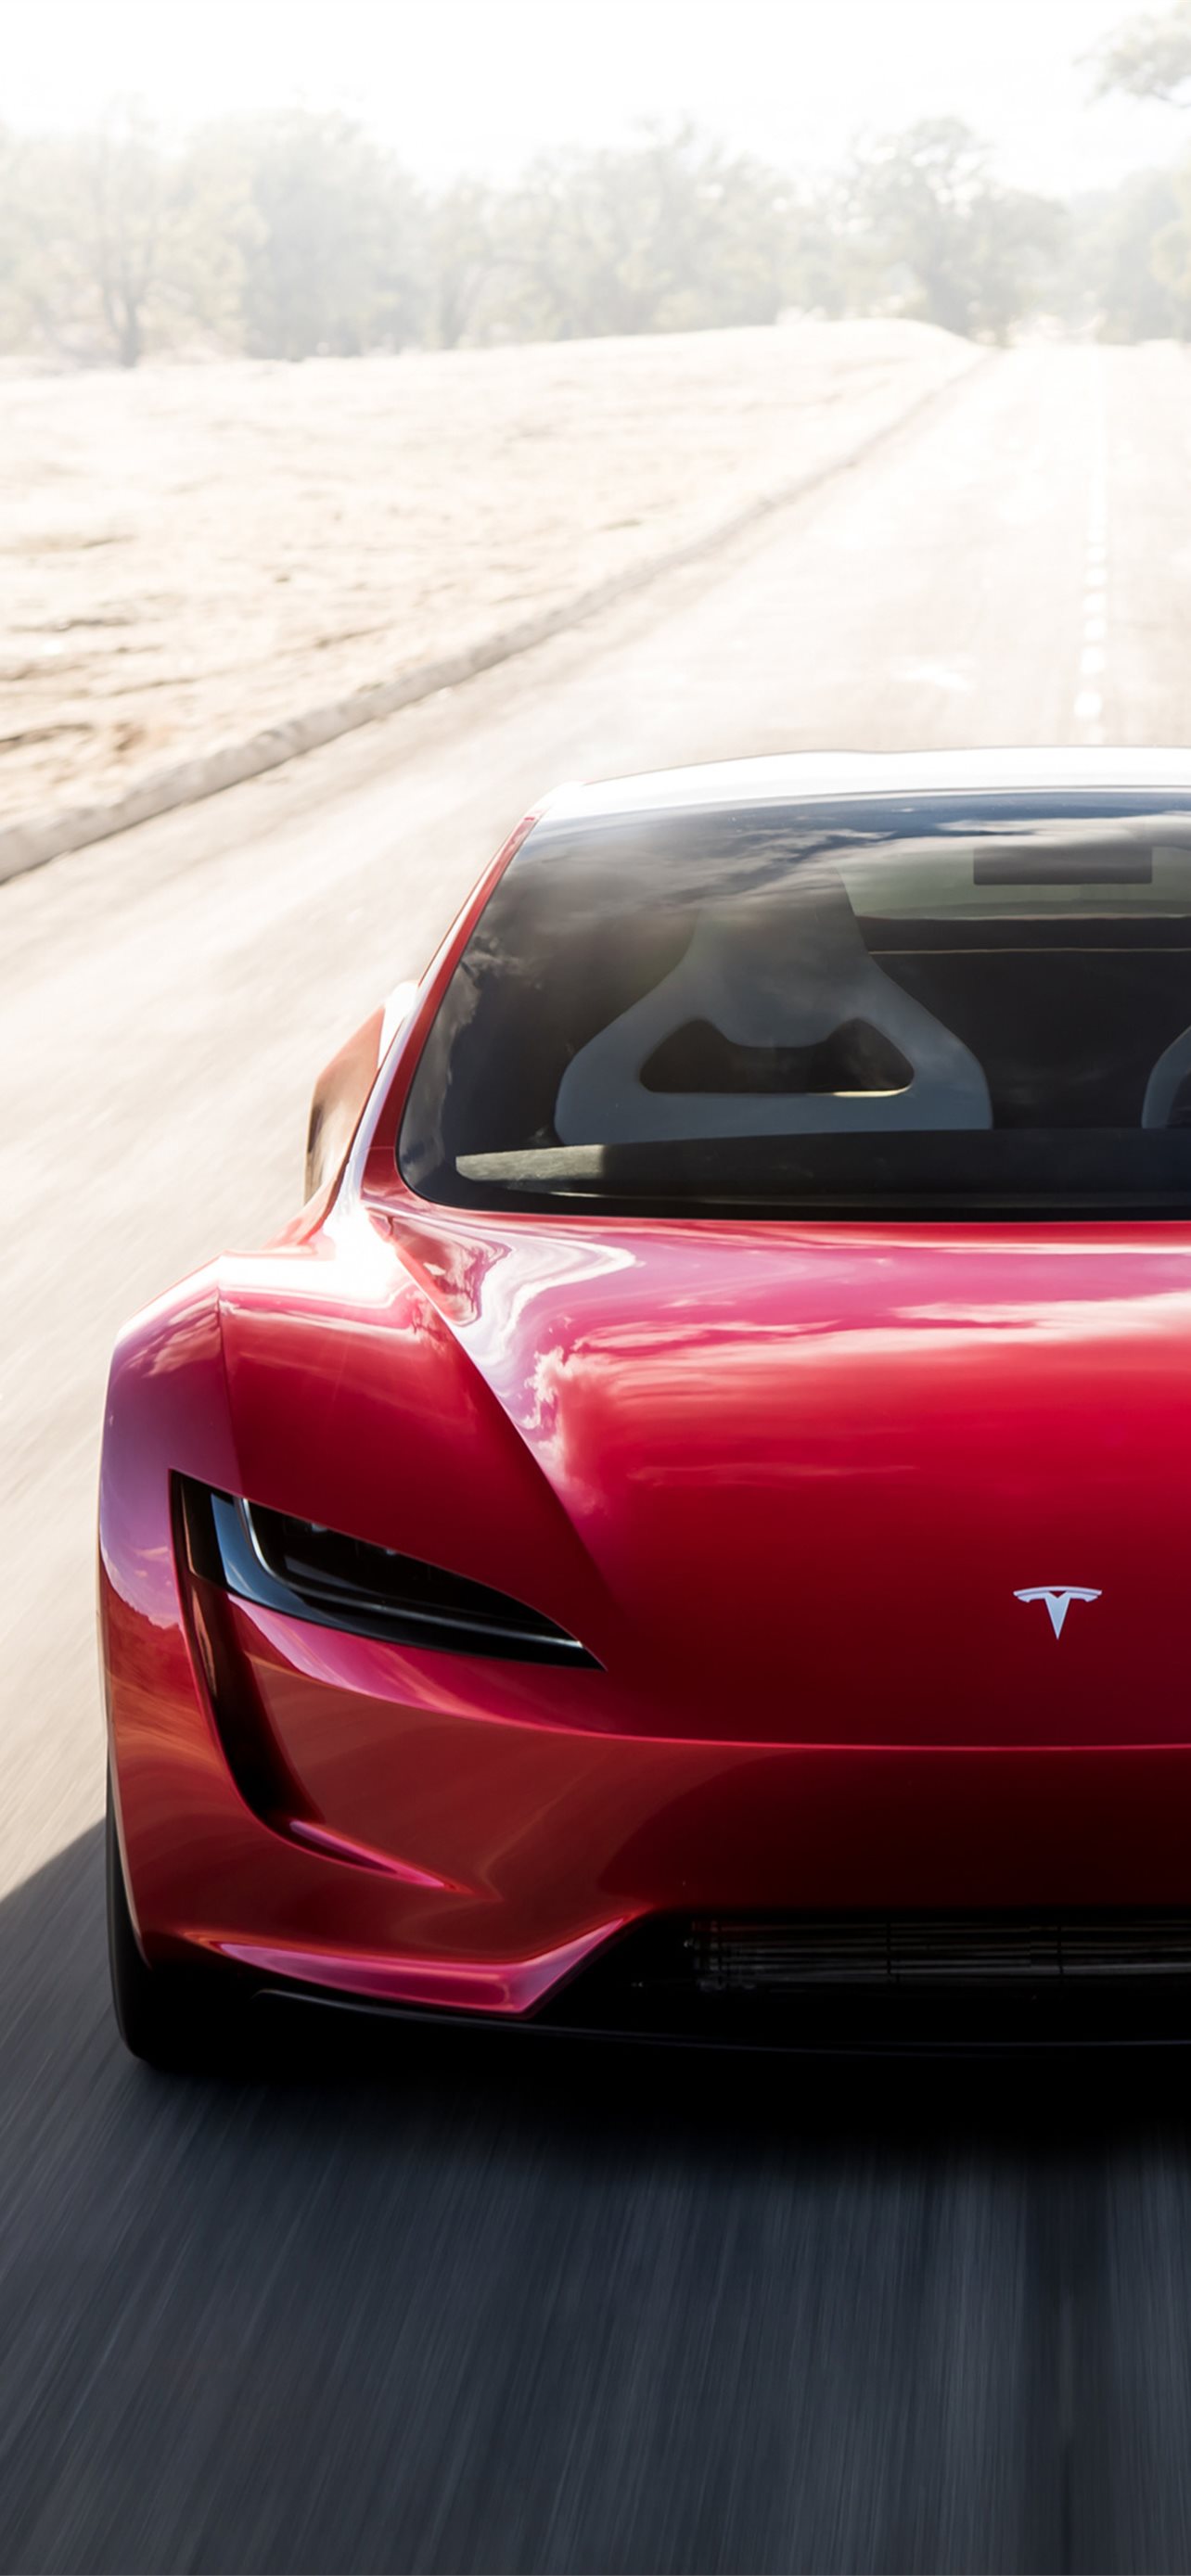 Tesla Roadster iPhone Wallpaper